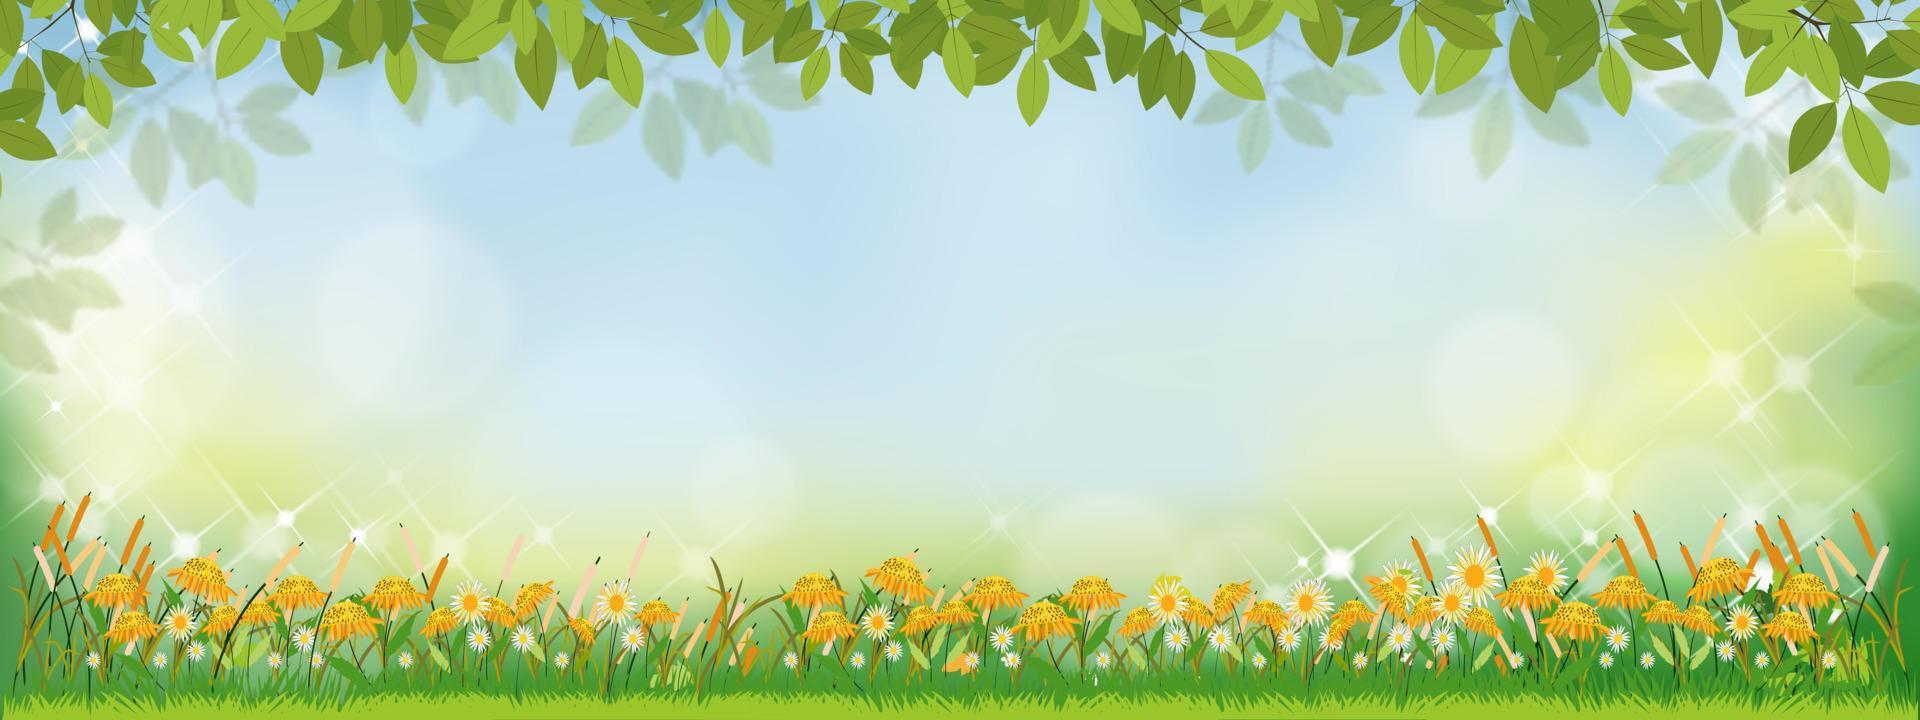 Hình nền vector với họa tiết mùa xuân tự nhiên sẽ giúp tạo ra không gian hài hòa và thú vị cho mọi bài thuyết trình của bạn. Hãy tải ngay để trải nghiệm!